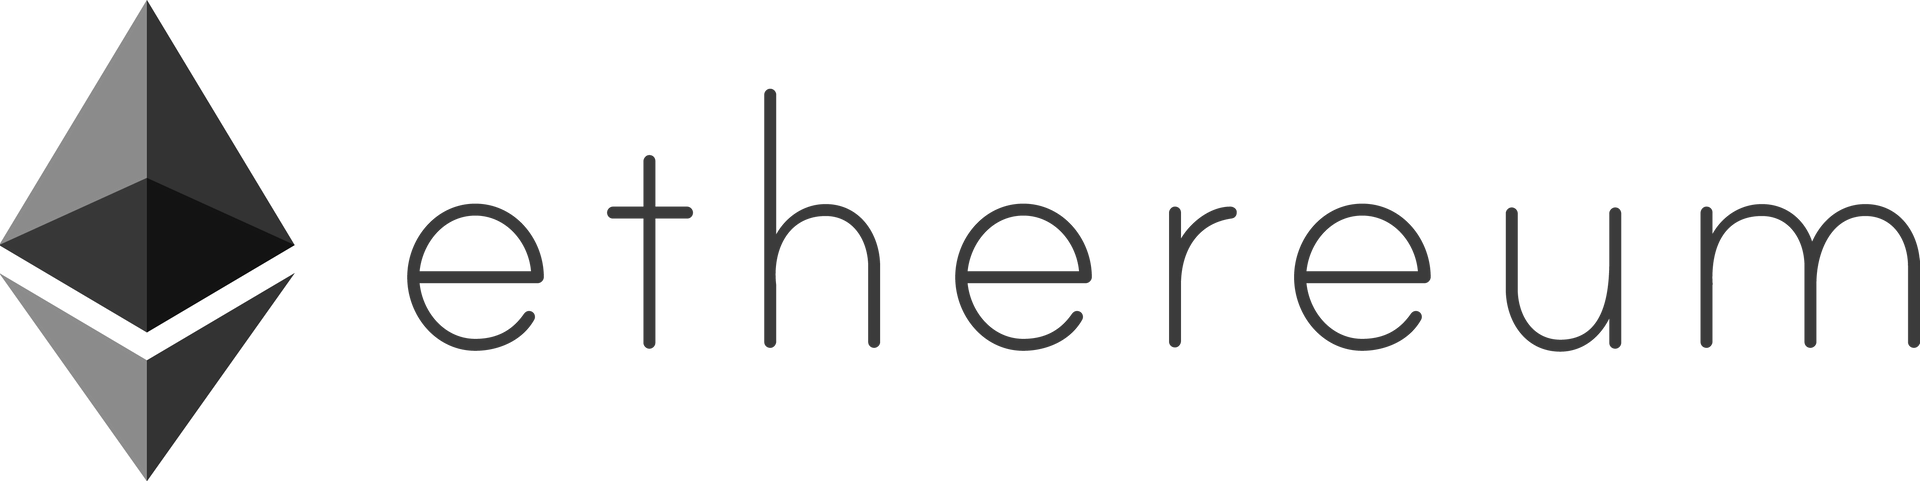 ethereum-logo-landscape-black.png